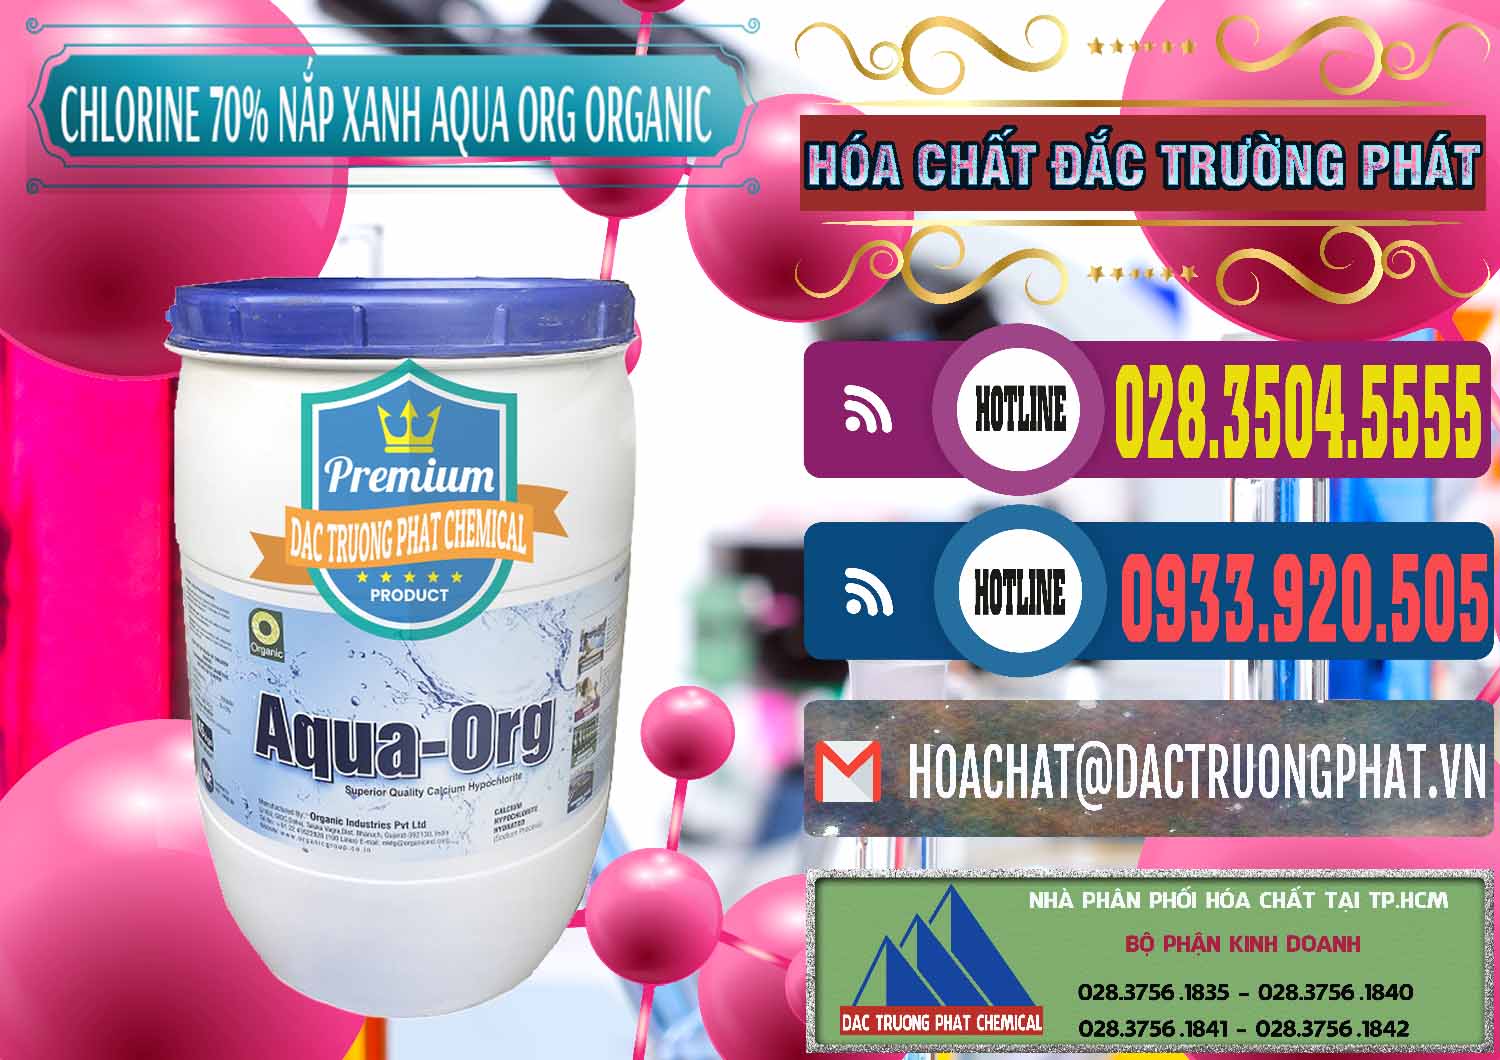 Chuyên phân phối - bán Chlorine – Clorin 70% Thùng Tròn Nắp Xanh Aqua ORG Organic Ấn Độ India - 0247 - Nơi phân phối và cung cấp hóa chất tại TP.HCM - muabanhoachat.com.vn